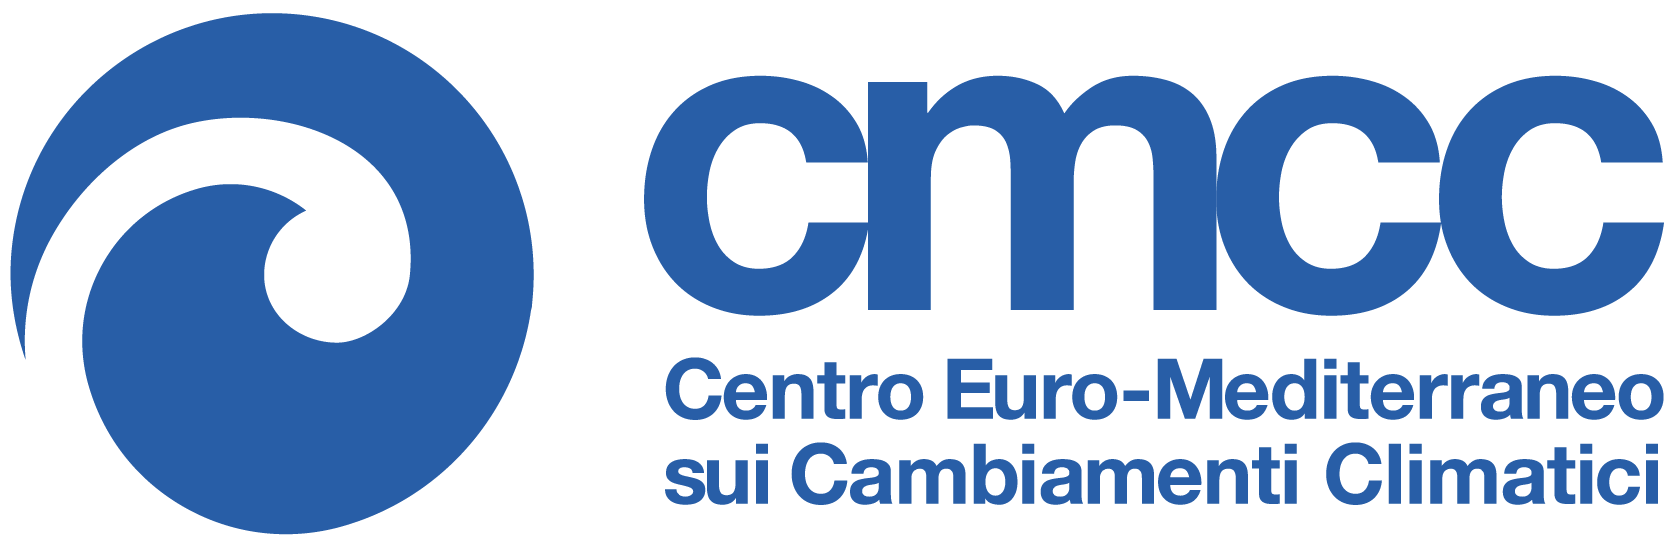 Fondazione CMCC - Centro Euro-Mediterraneo sui Cambiamenti Climatici